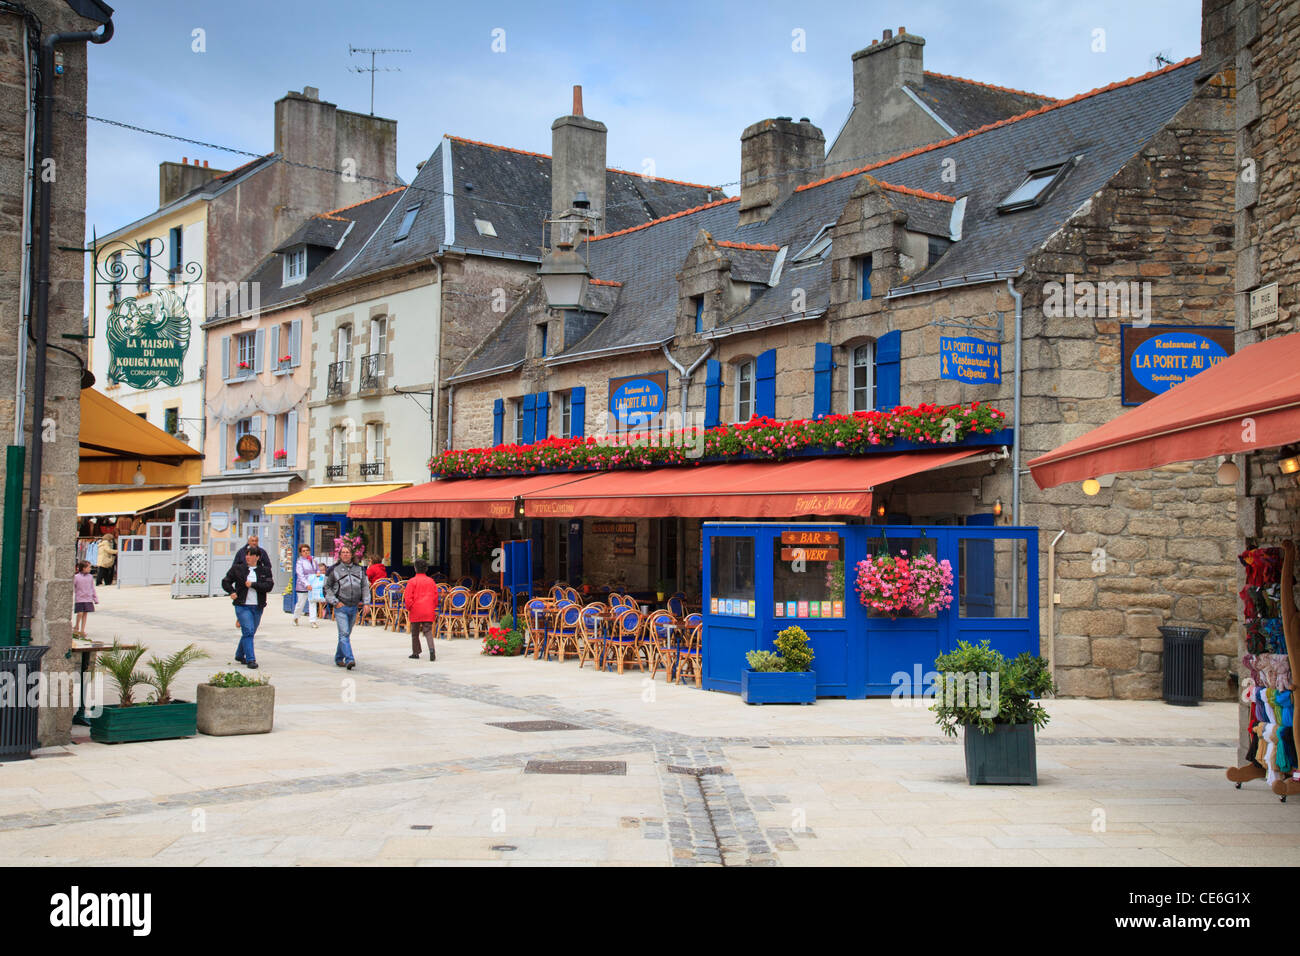 Persone che passeggiano tra i negozi e i ristoranti della Ville vicino, il quartiere storico di Cocarneau, Brittany, Francia. Foto Stock